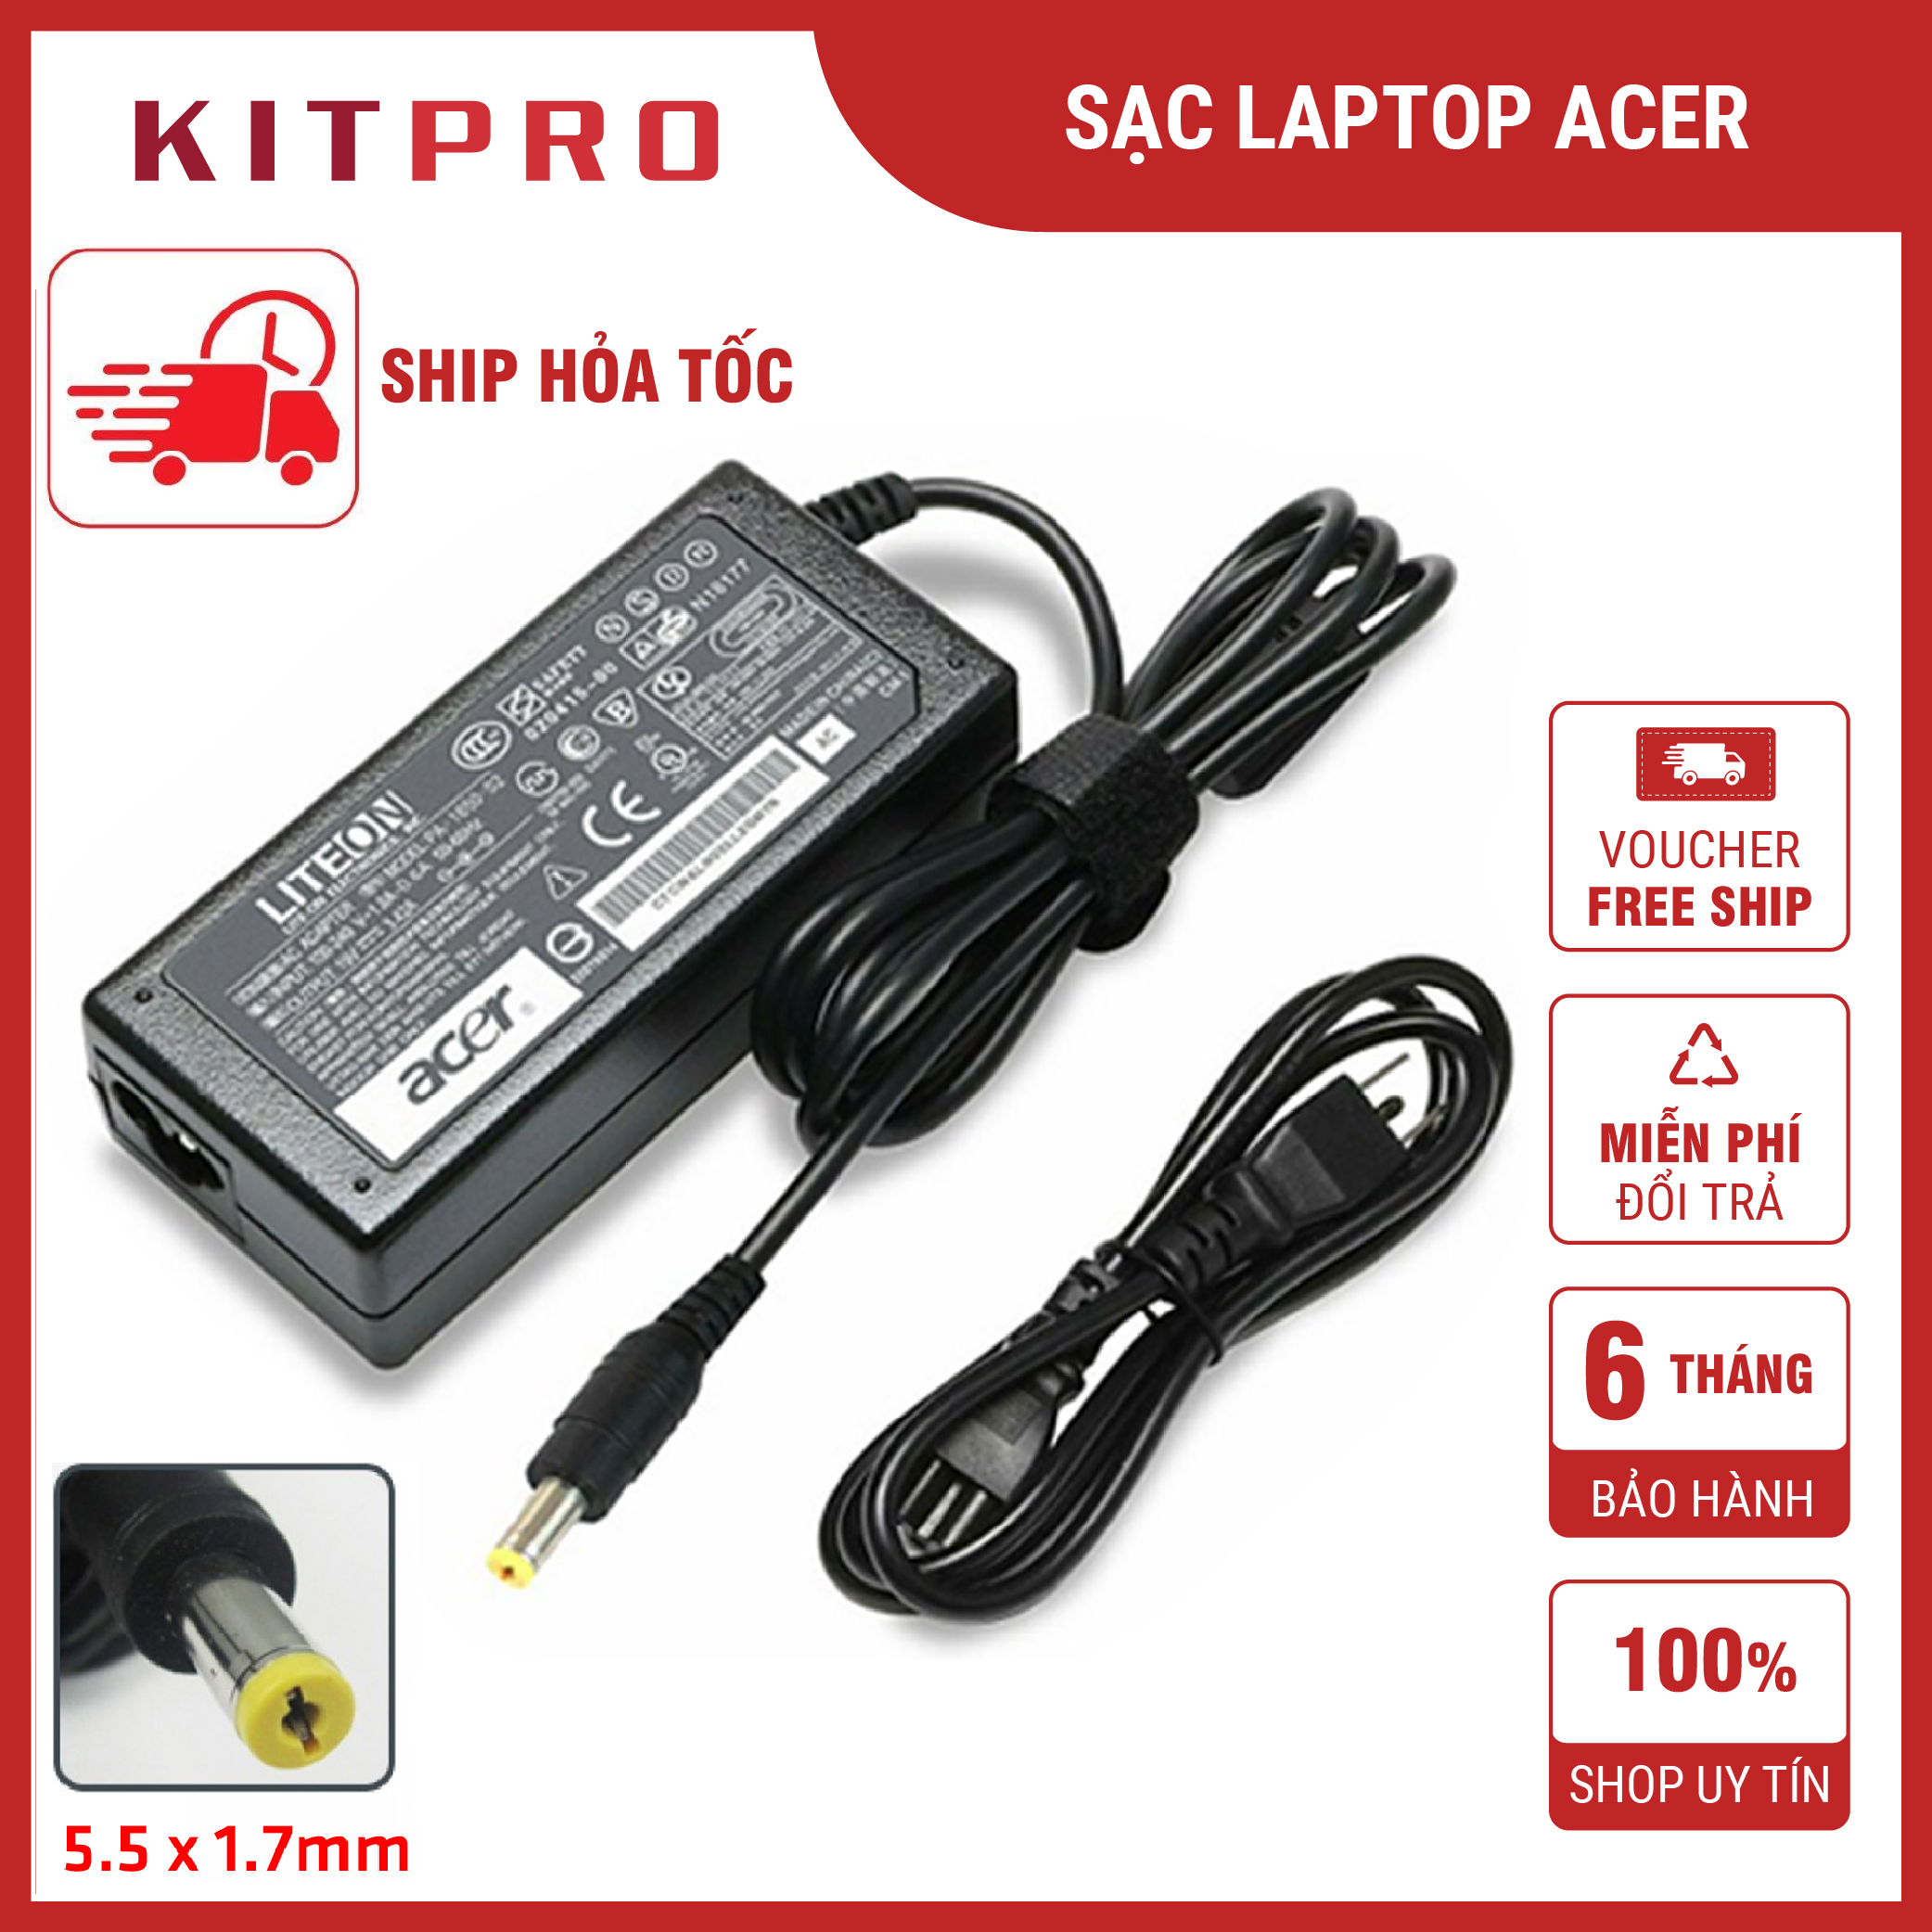 Sạc laptop Acer 19V 3.42A 4.74A 2.37A dây sạc máy tính Acer Aspire Travelmate chuôi cắm 5.5 x 1.7mm nguồn 45w 65w 90w ship hỏa tốc KITPRO